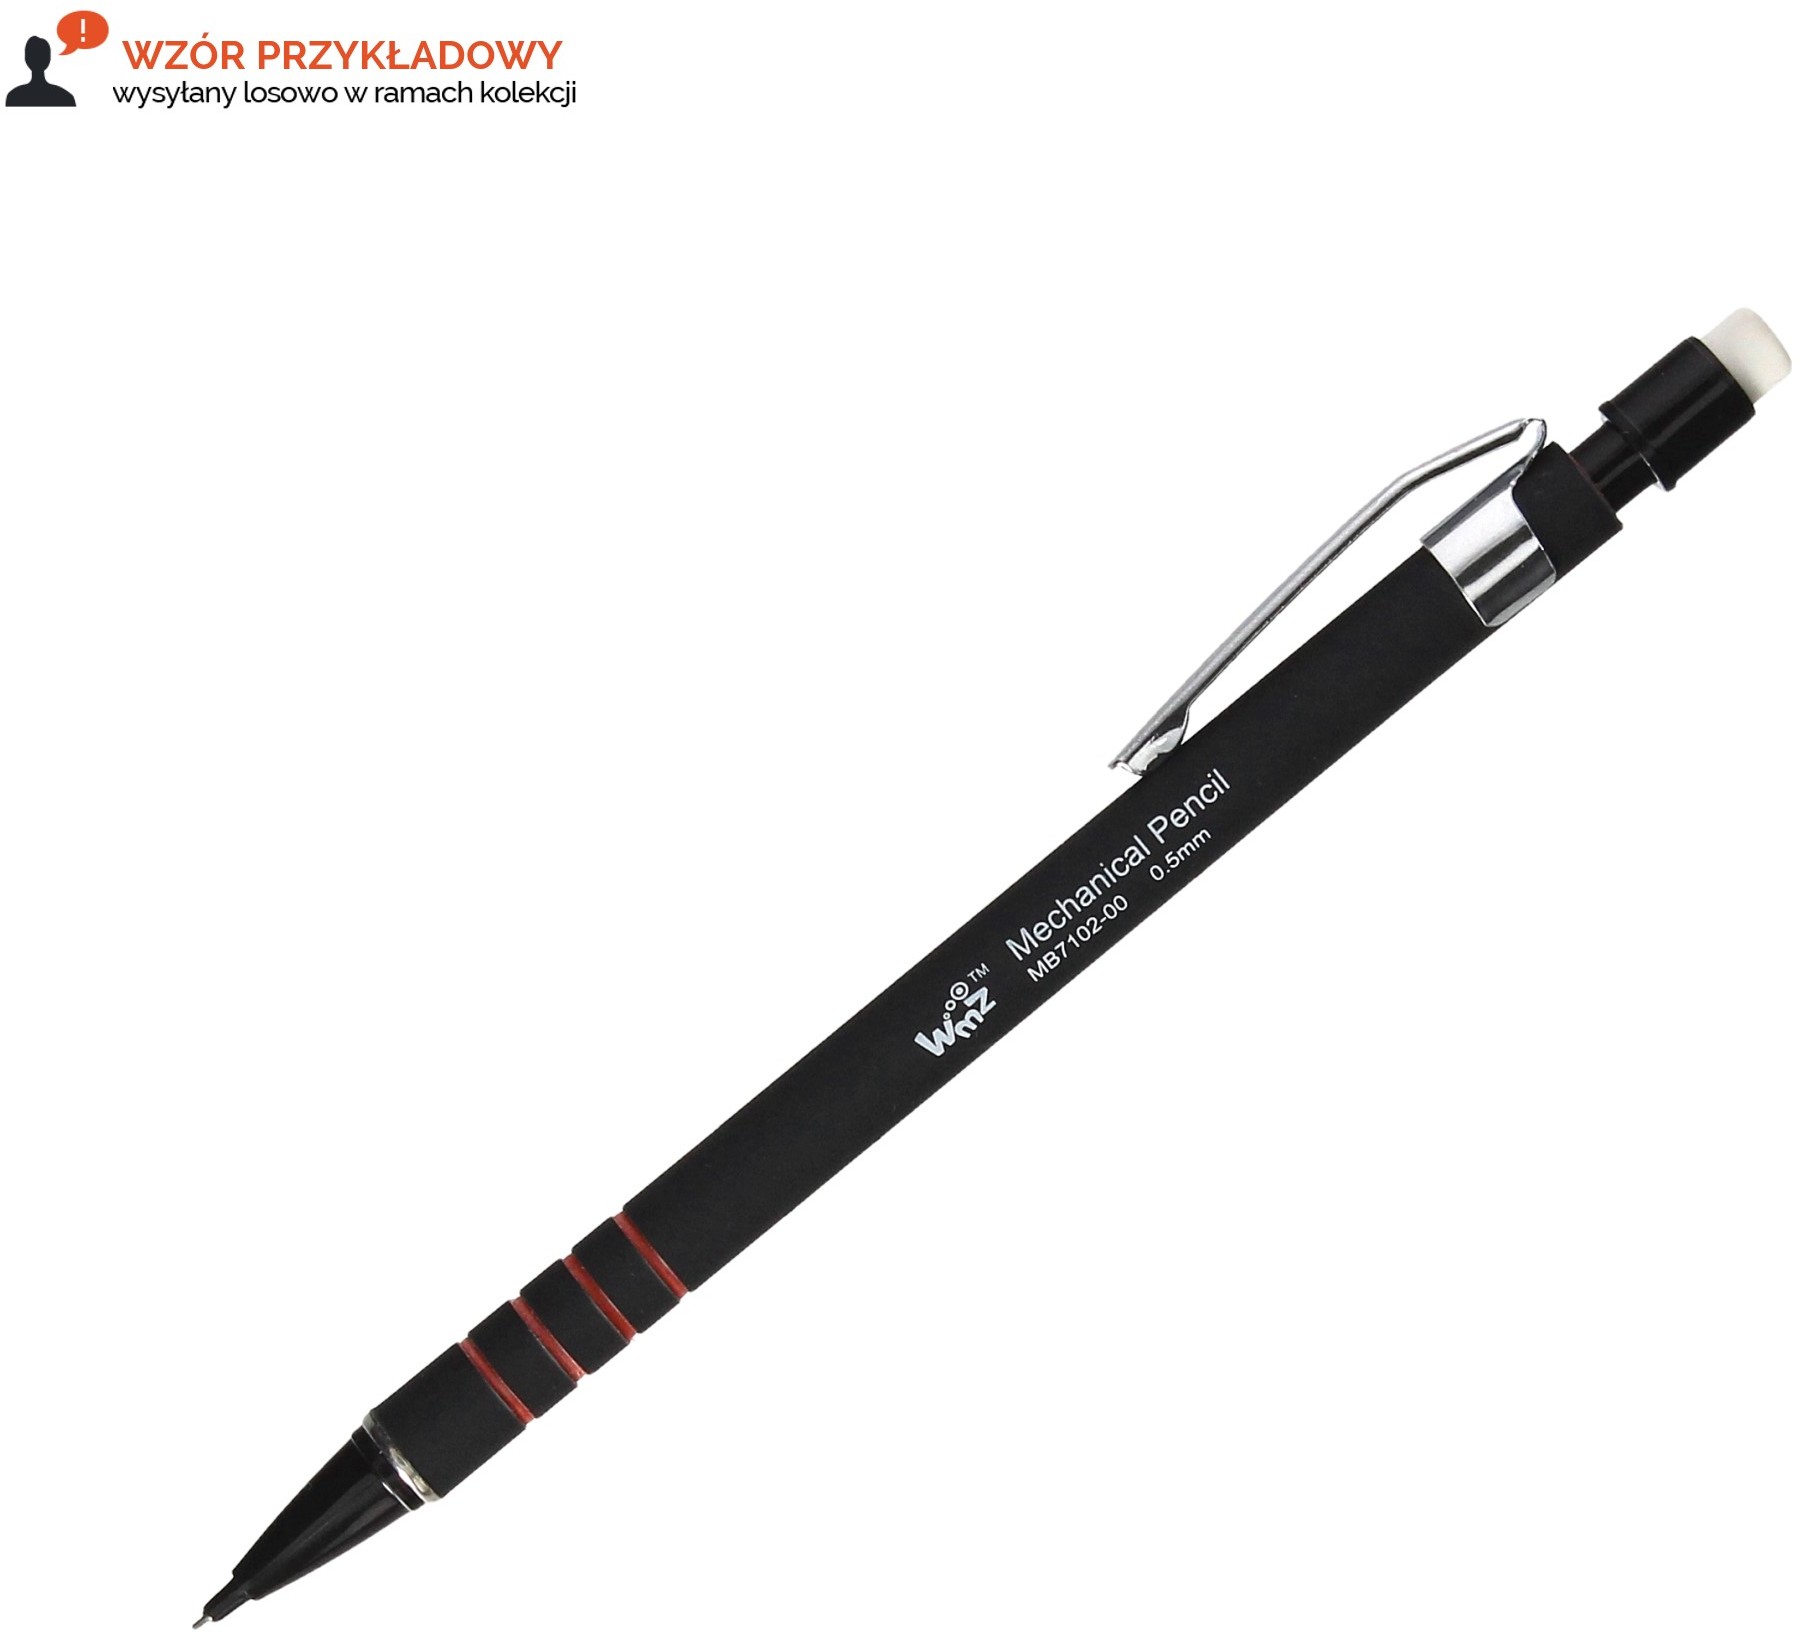 BEIFA Ołówek automatyczny 0.5mm mix Beifa MB7102